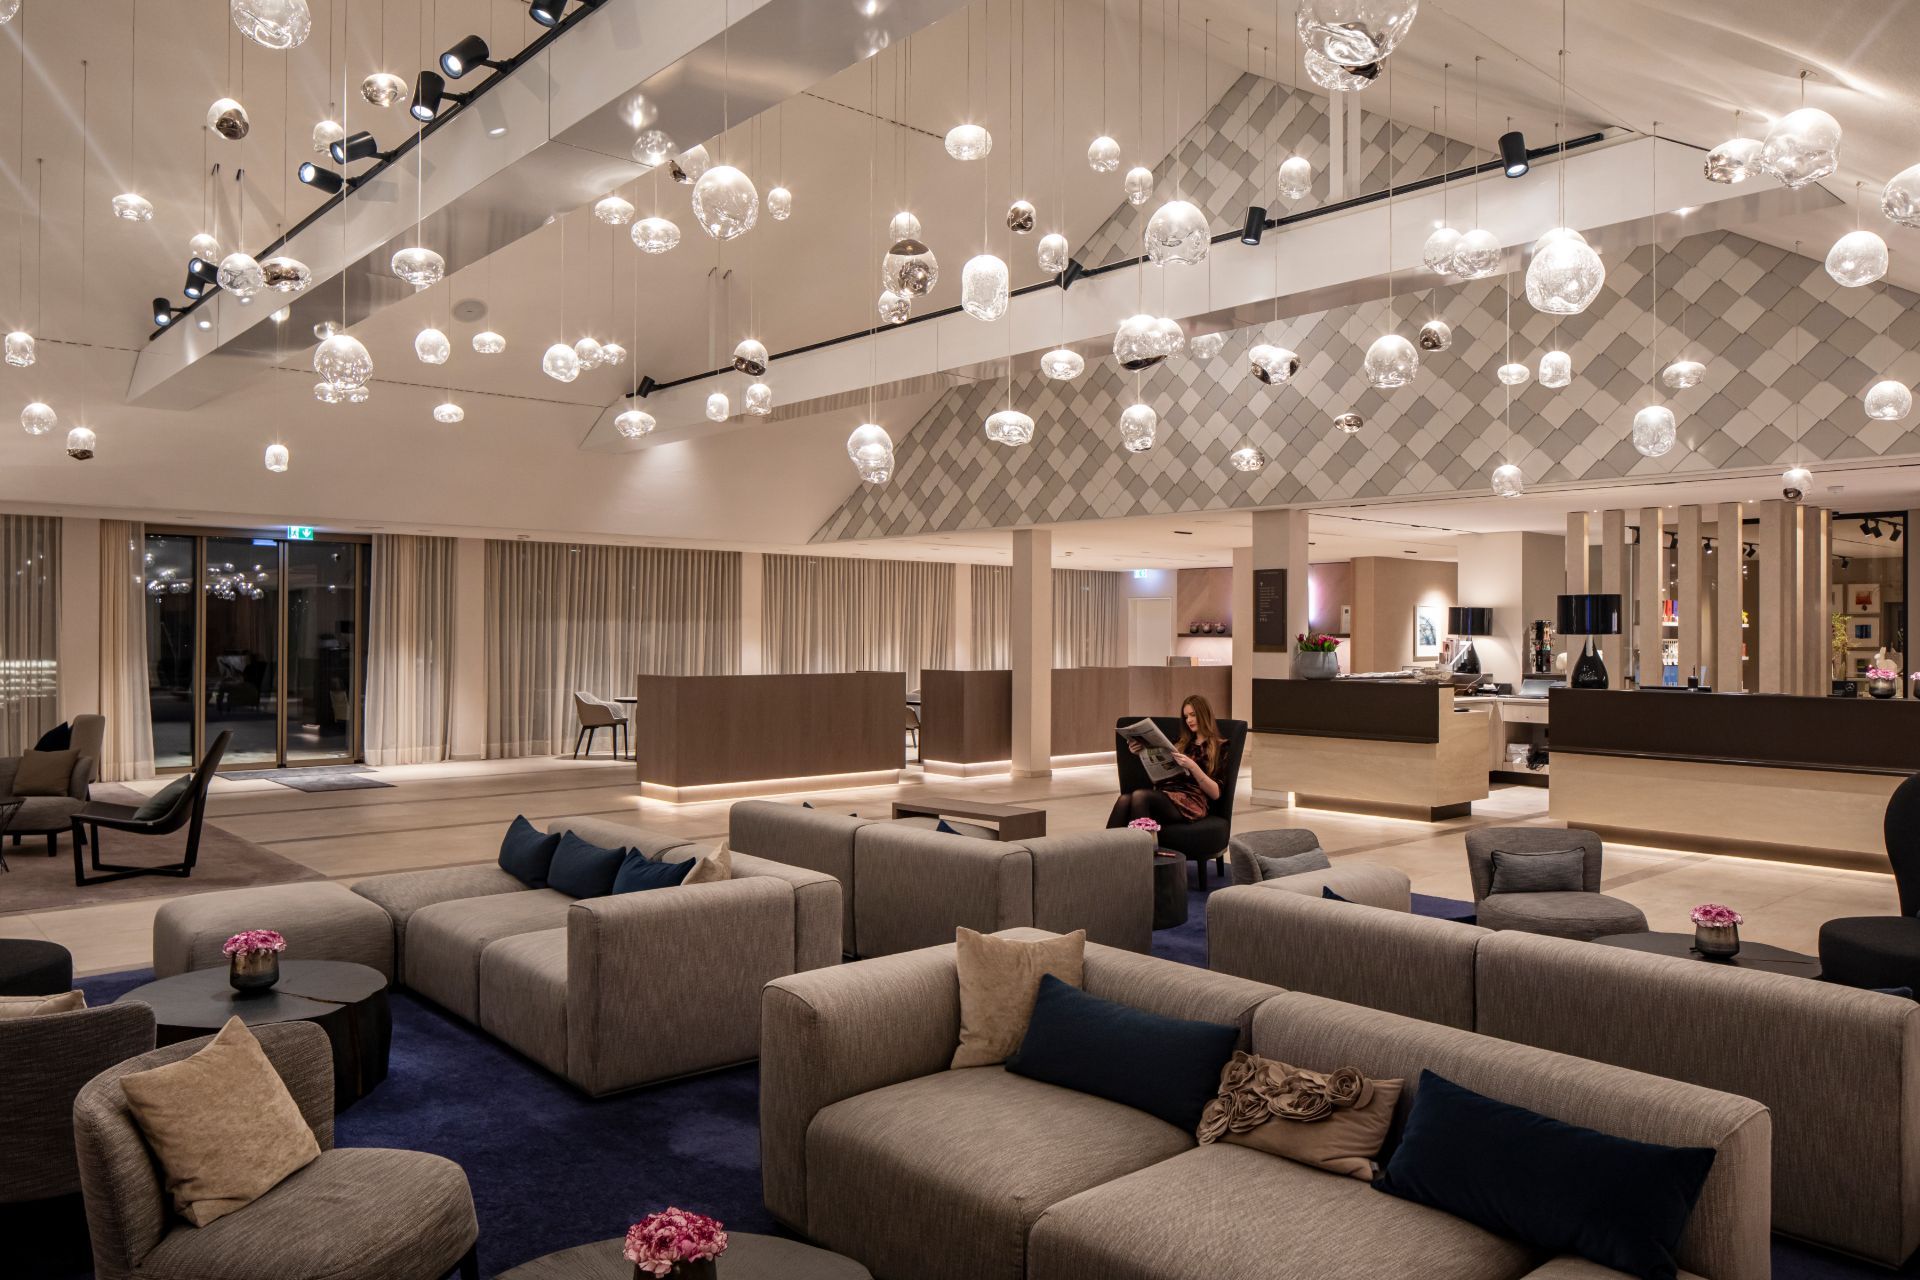 Lobby des 5 Sterne Hotels im Schwarzwald mit einzigartigen Deckenlampen und gemütlichen Sofas